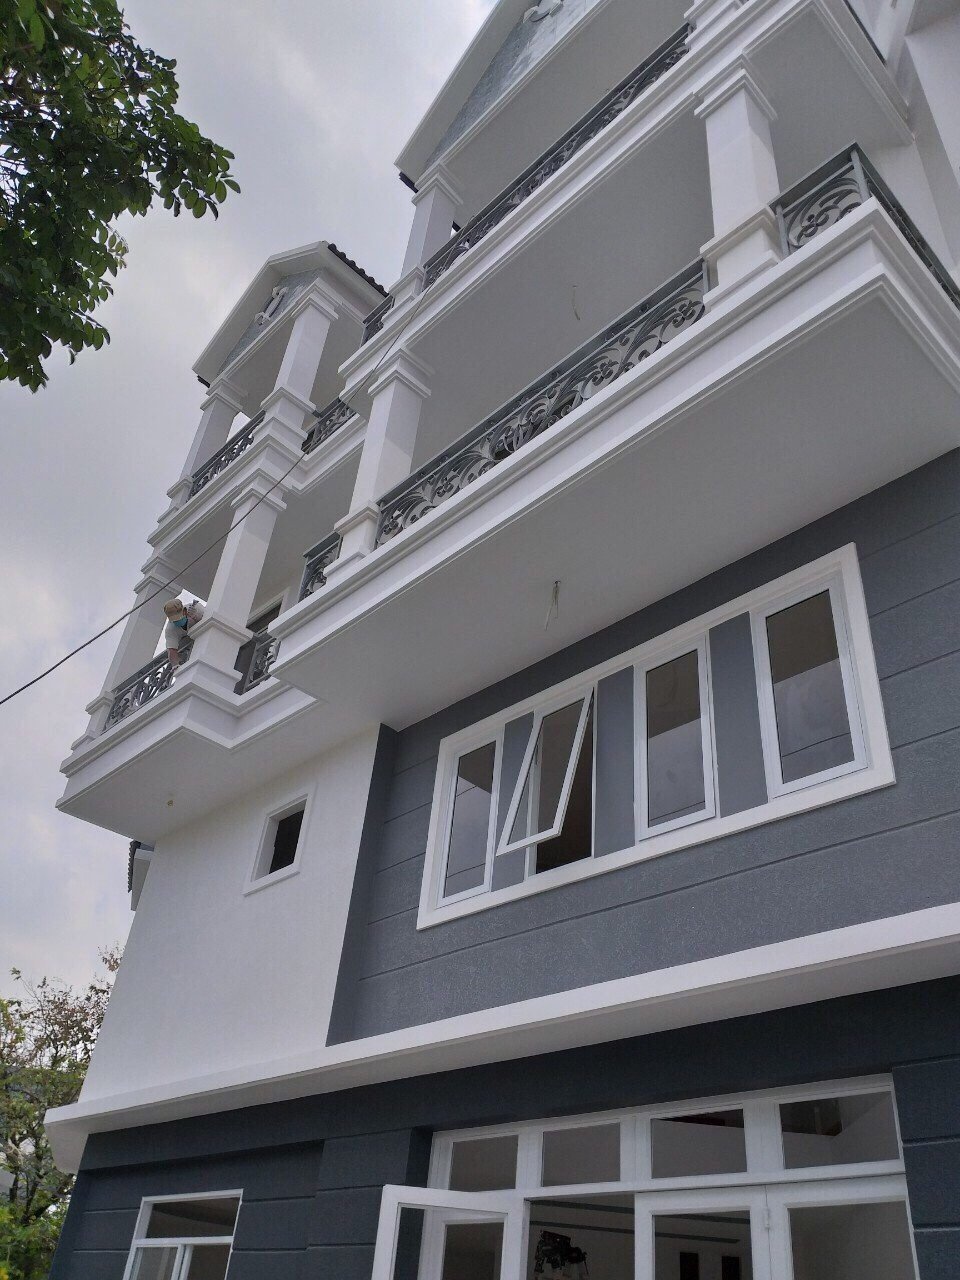 Bán nhà góc 2 mặt tiền hẻm 1135 Huỳnh Tấn Phát, Q7, DT 7x15m, 2 lầu, ST. Giá 5,9 tỷ